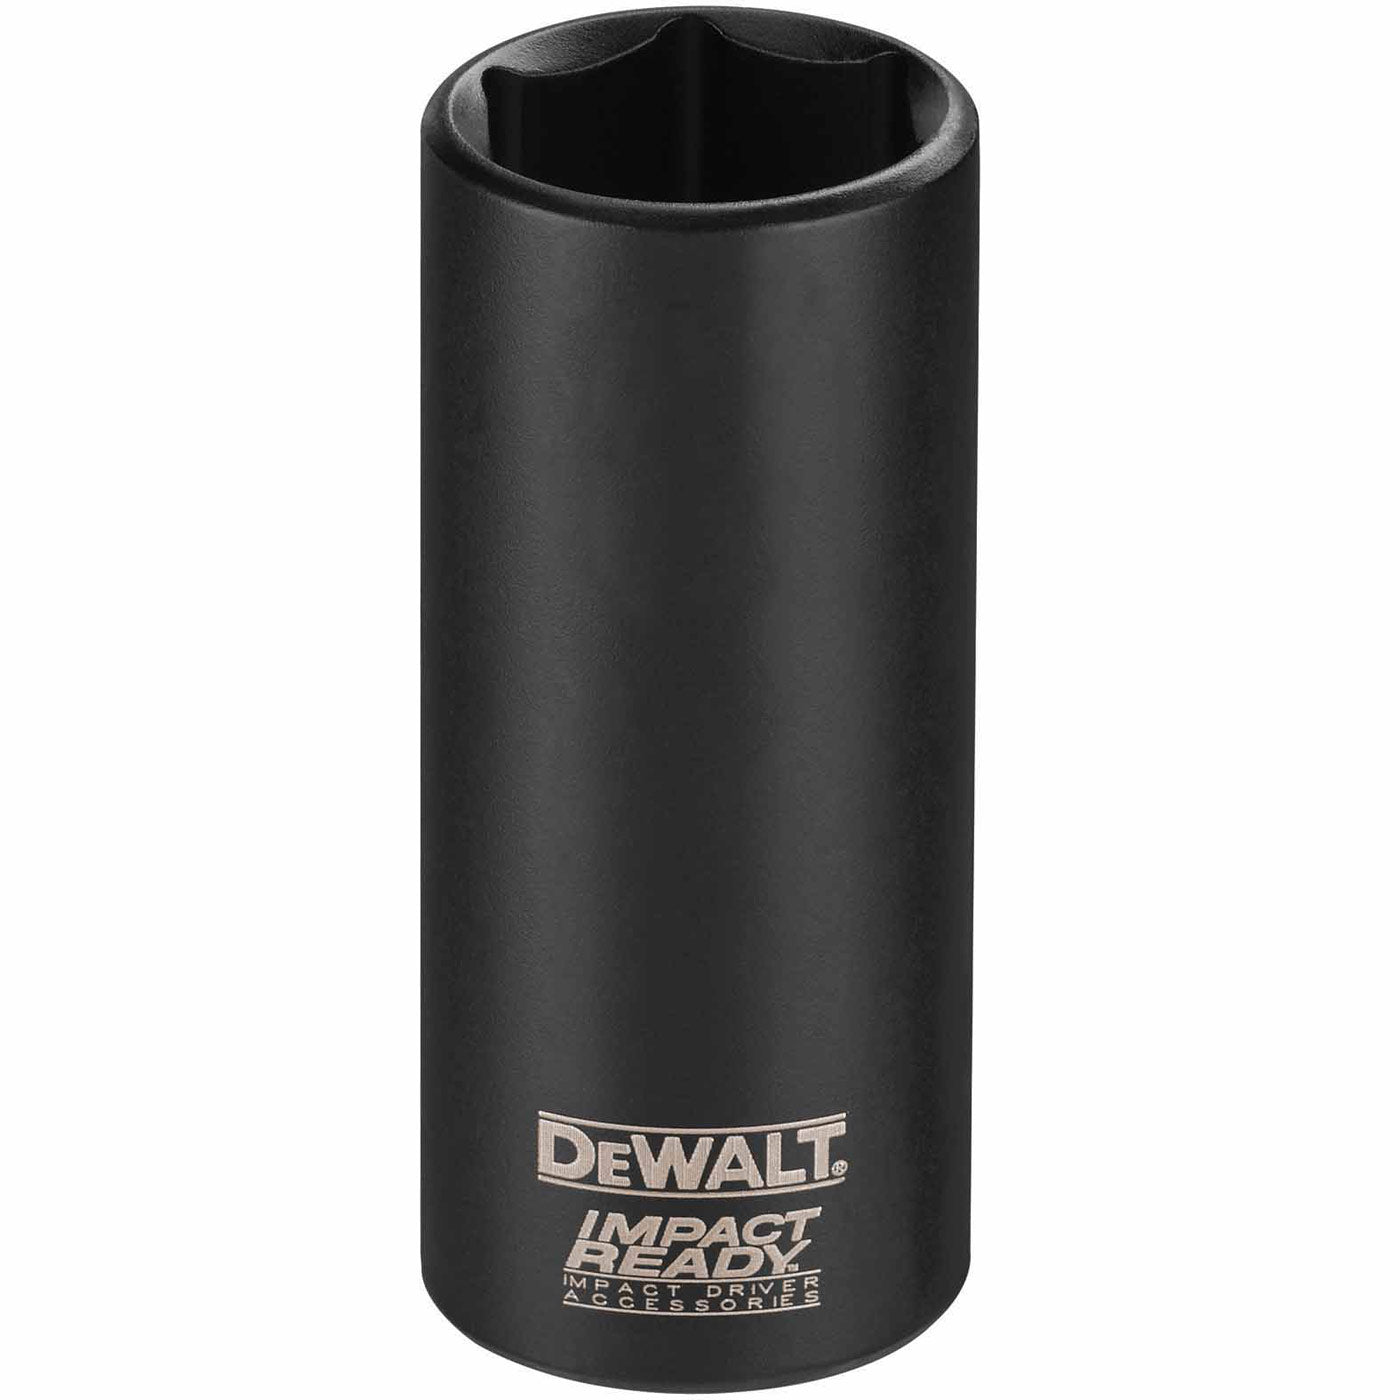 DeWalt DW2284 3/8" Impact Ready Open Stock Deep Socket, 3/8" Drive